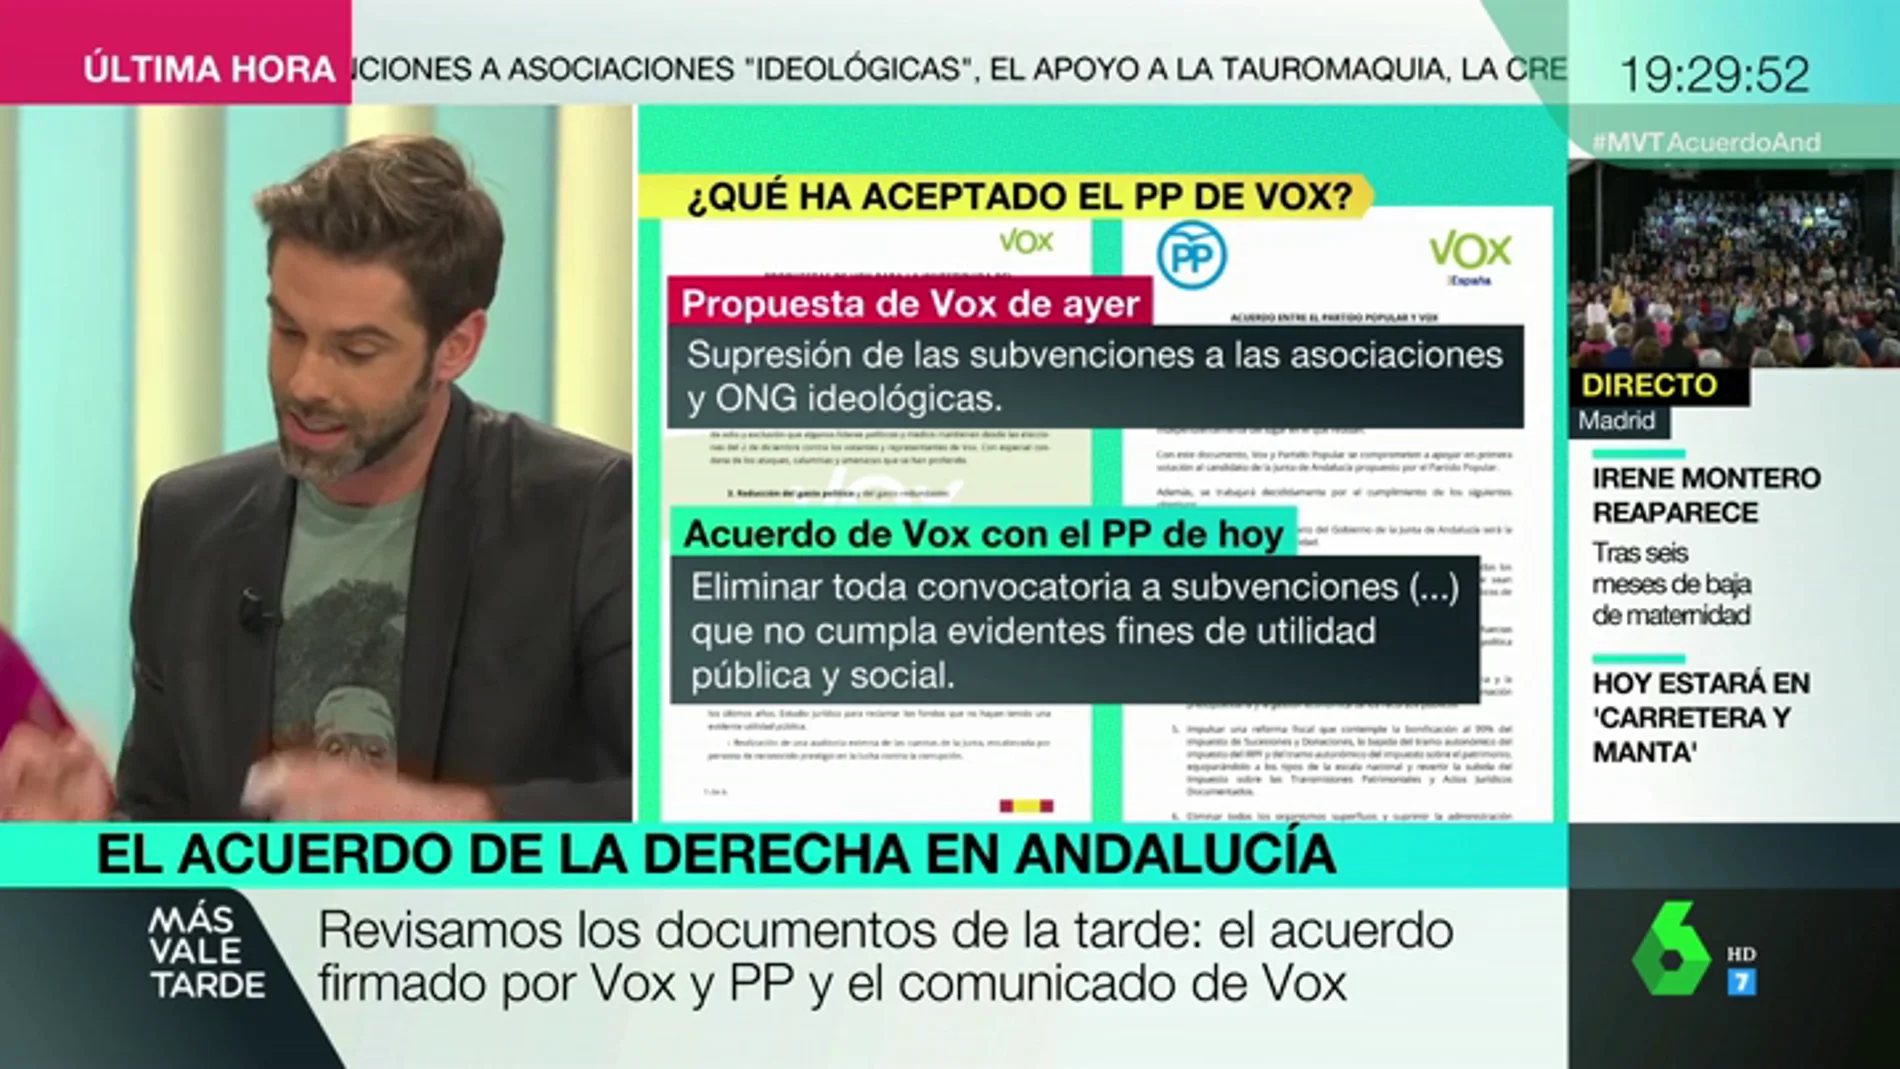 Te explicamos qué ha aceptado realmente el PP de Vox en su acuerdo para Andalucía